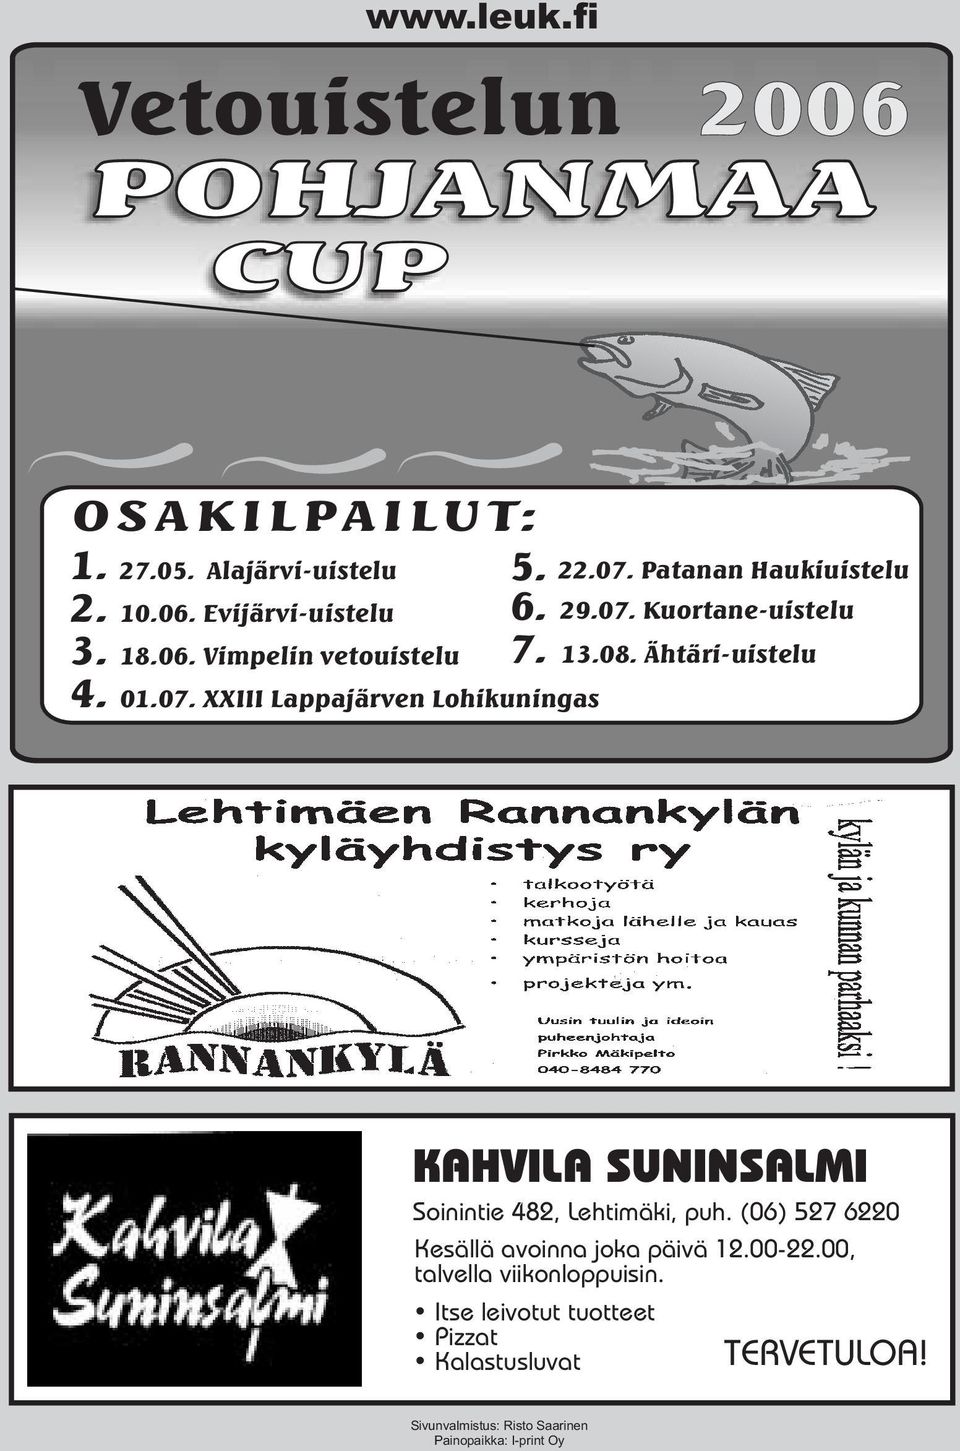 Ähtäri-uistelu KAHVILA SUNINSALMI Soinintie 482, Lehtimäki, puh. (06) 527 6220 Kesällä avoinna joka päivä 12.00-22.